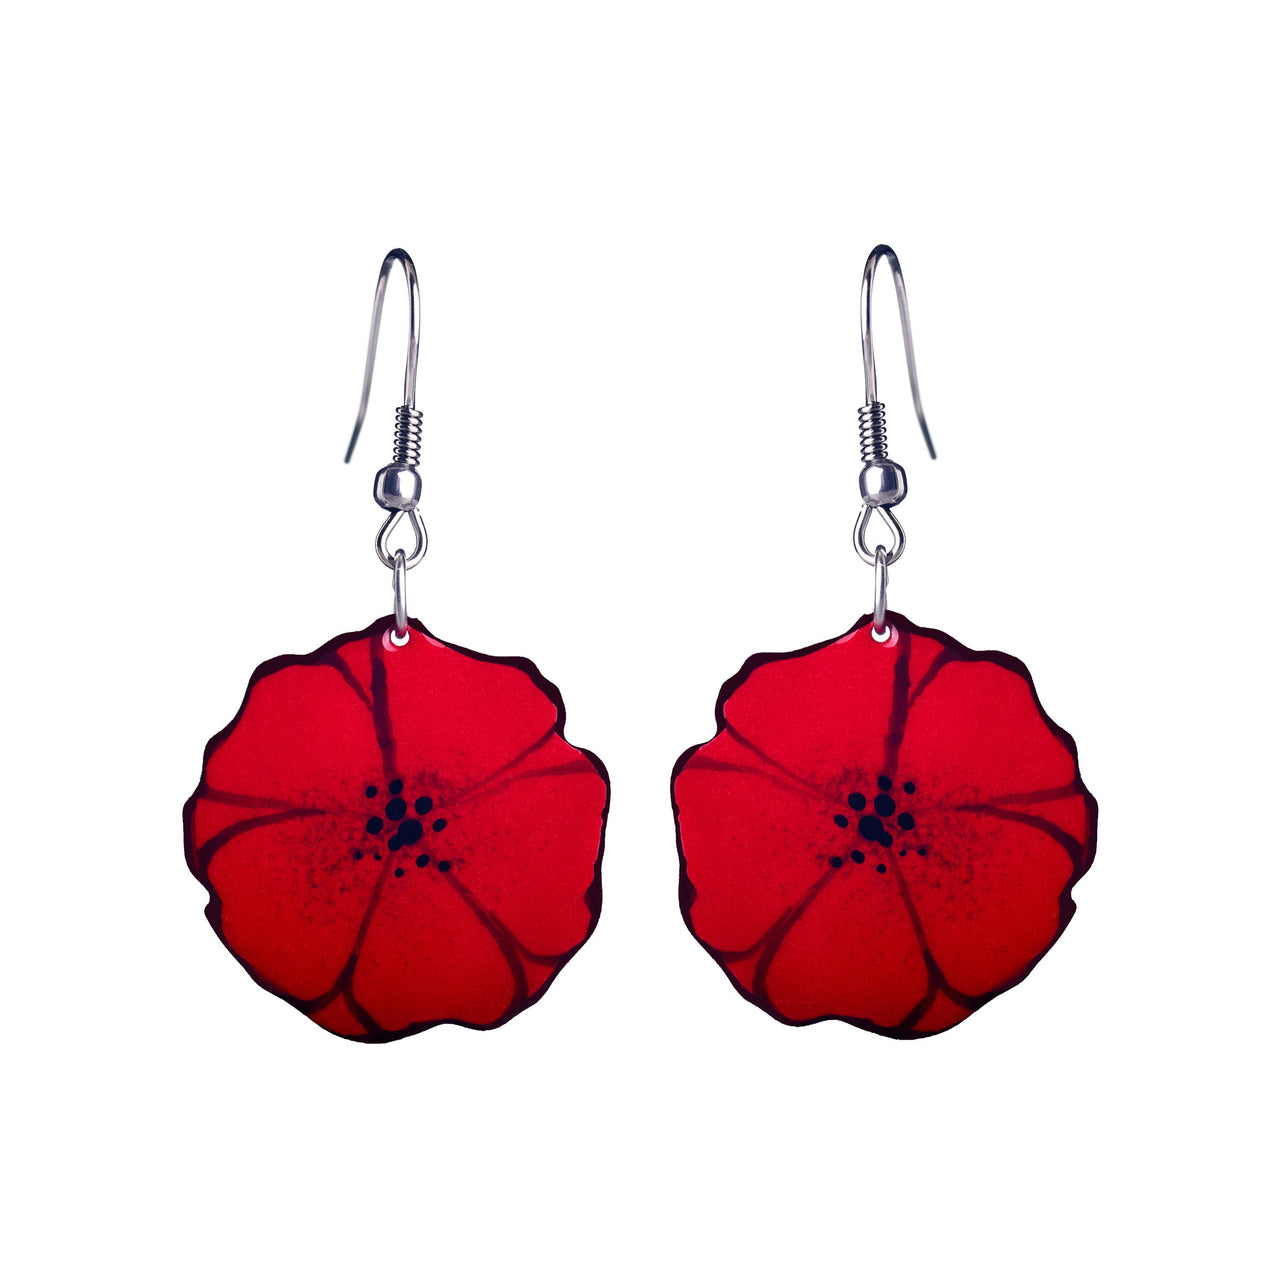 Illustrated Poppy earrings